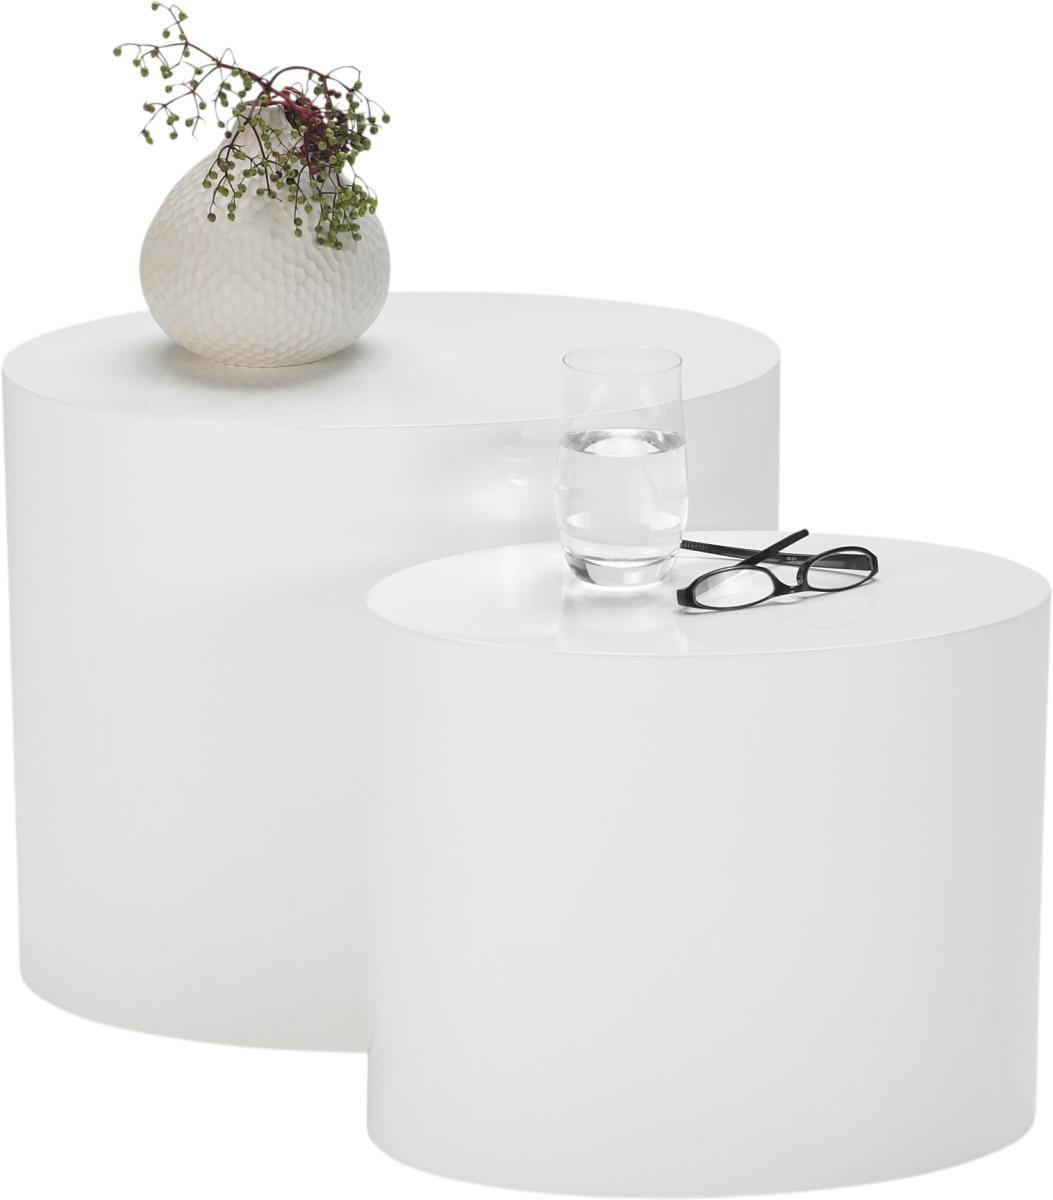 COUCHTISCHSET oval Weiß  - Weiß, Design (40/40cm) - Livetastic